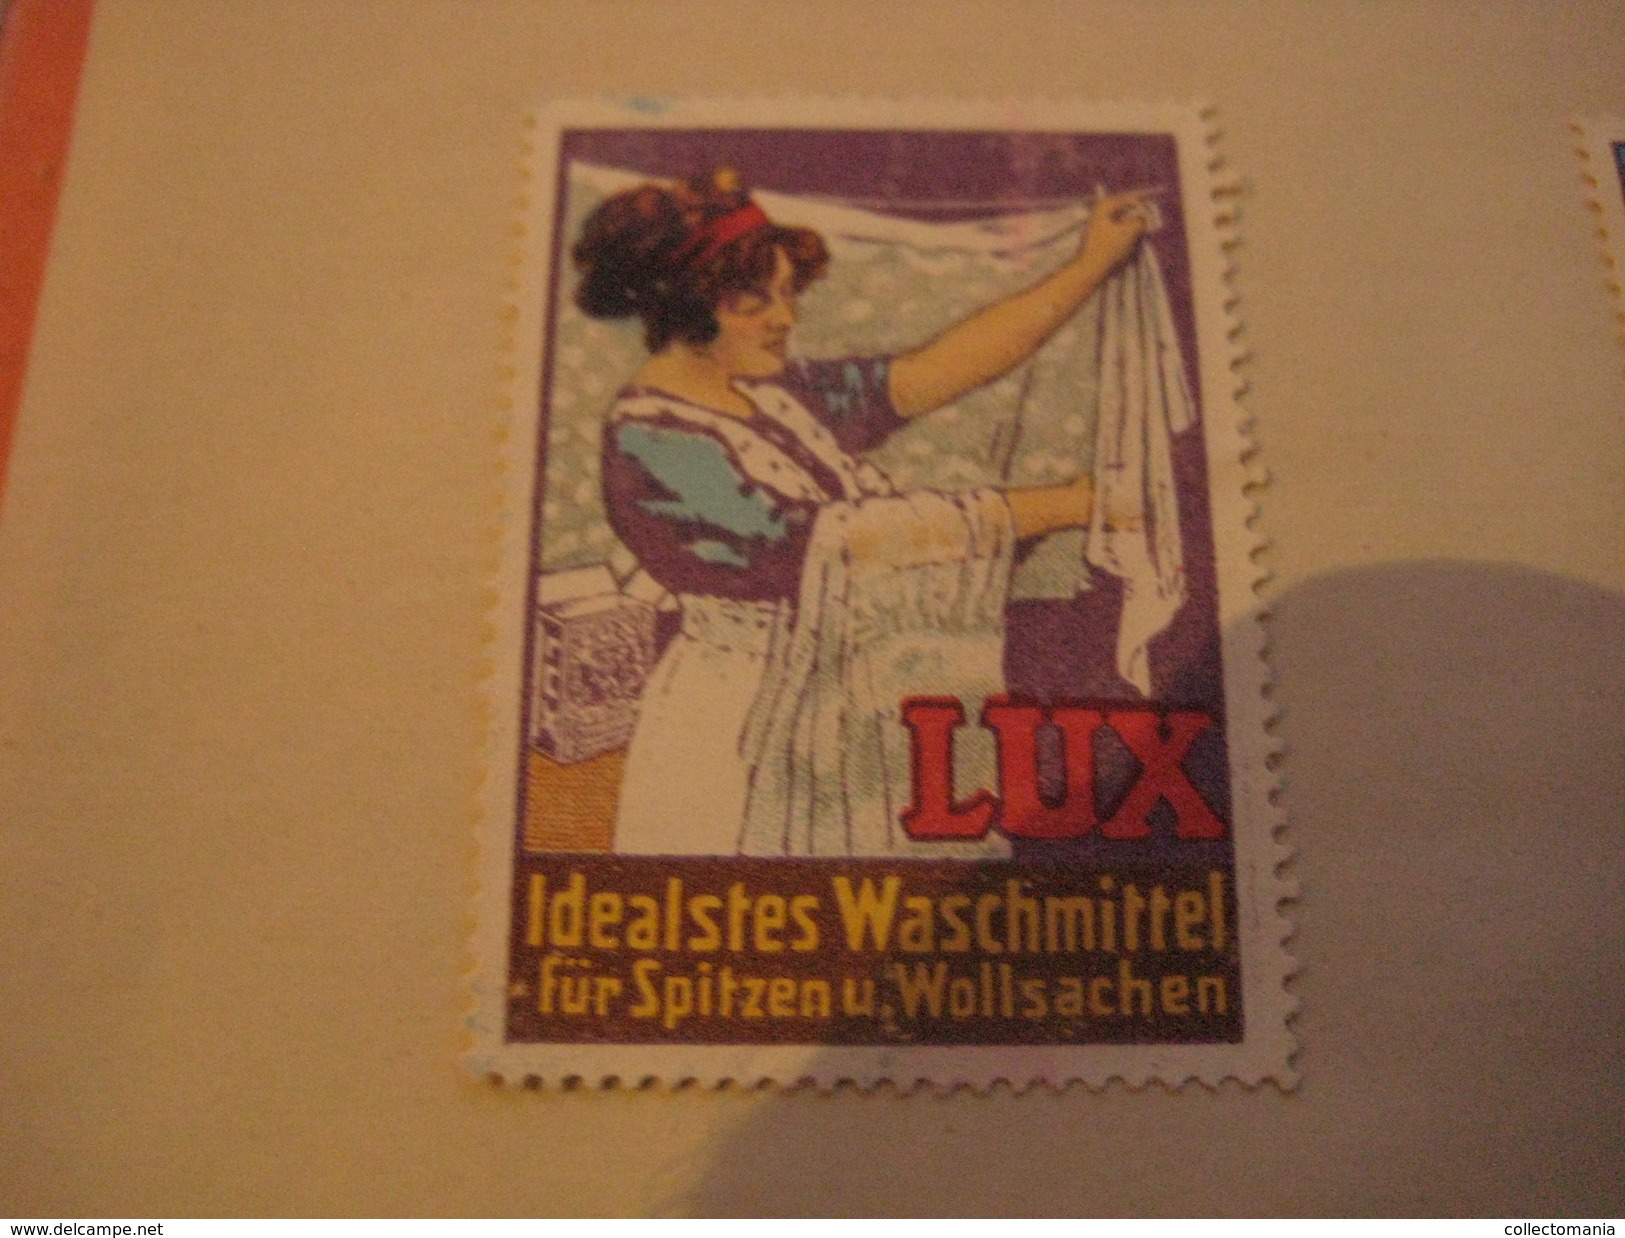 6 Poster Stamp Advertising LUX Waschmittel PUTZmittel VIM  Litho ART Putzt Alles - Erinnophilie